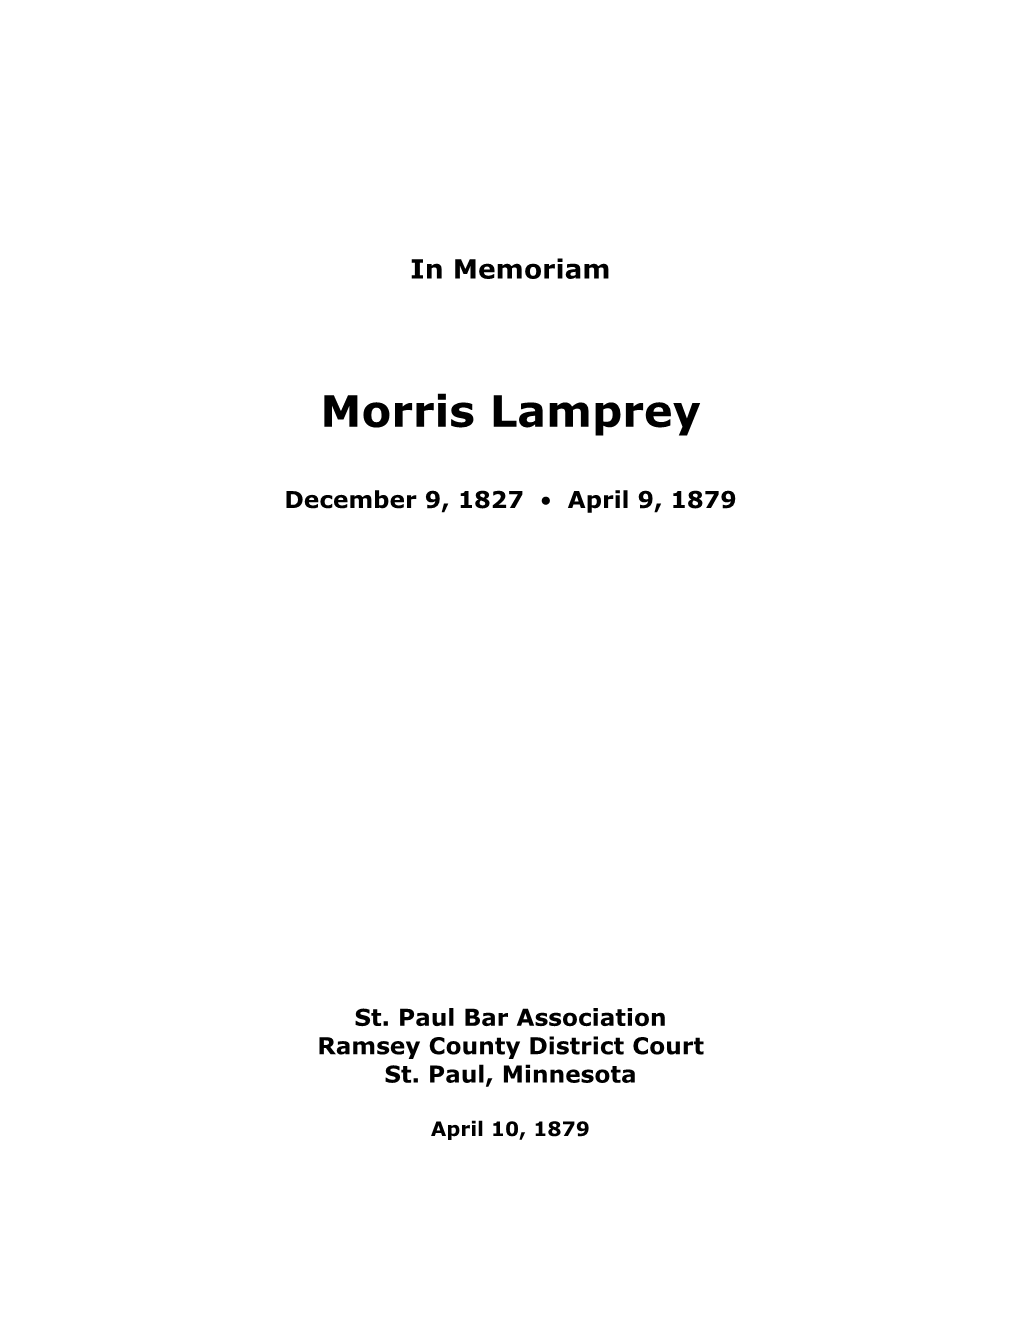 Morris Lamprey